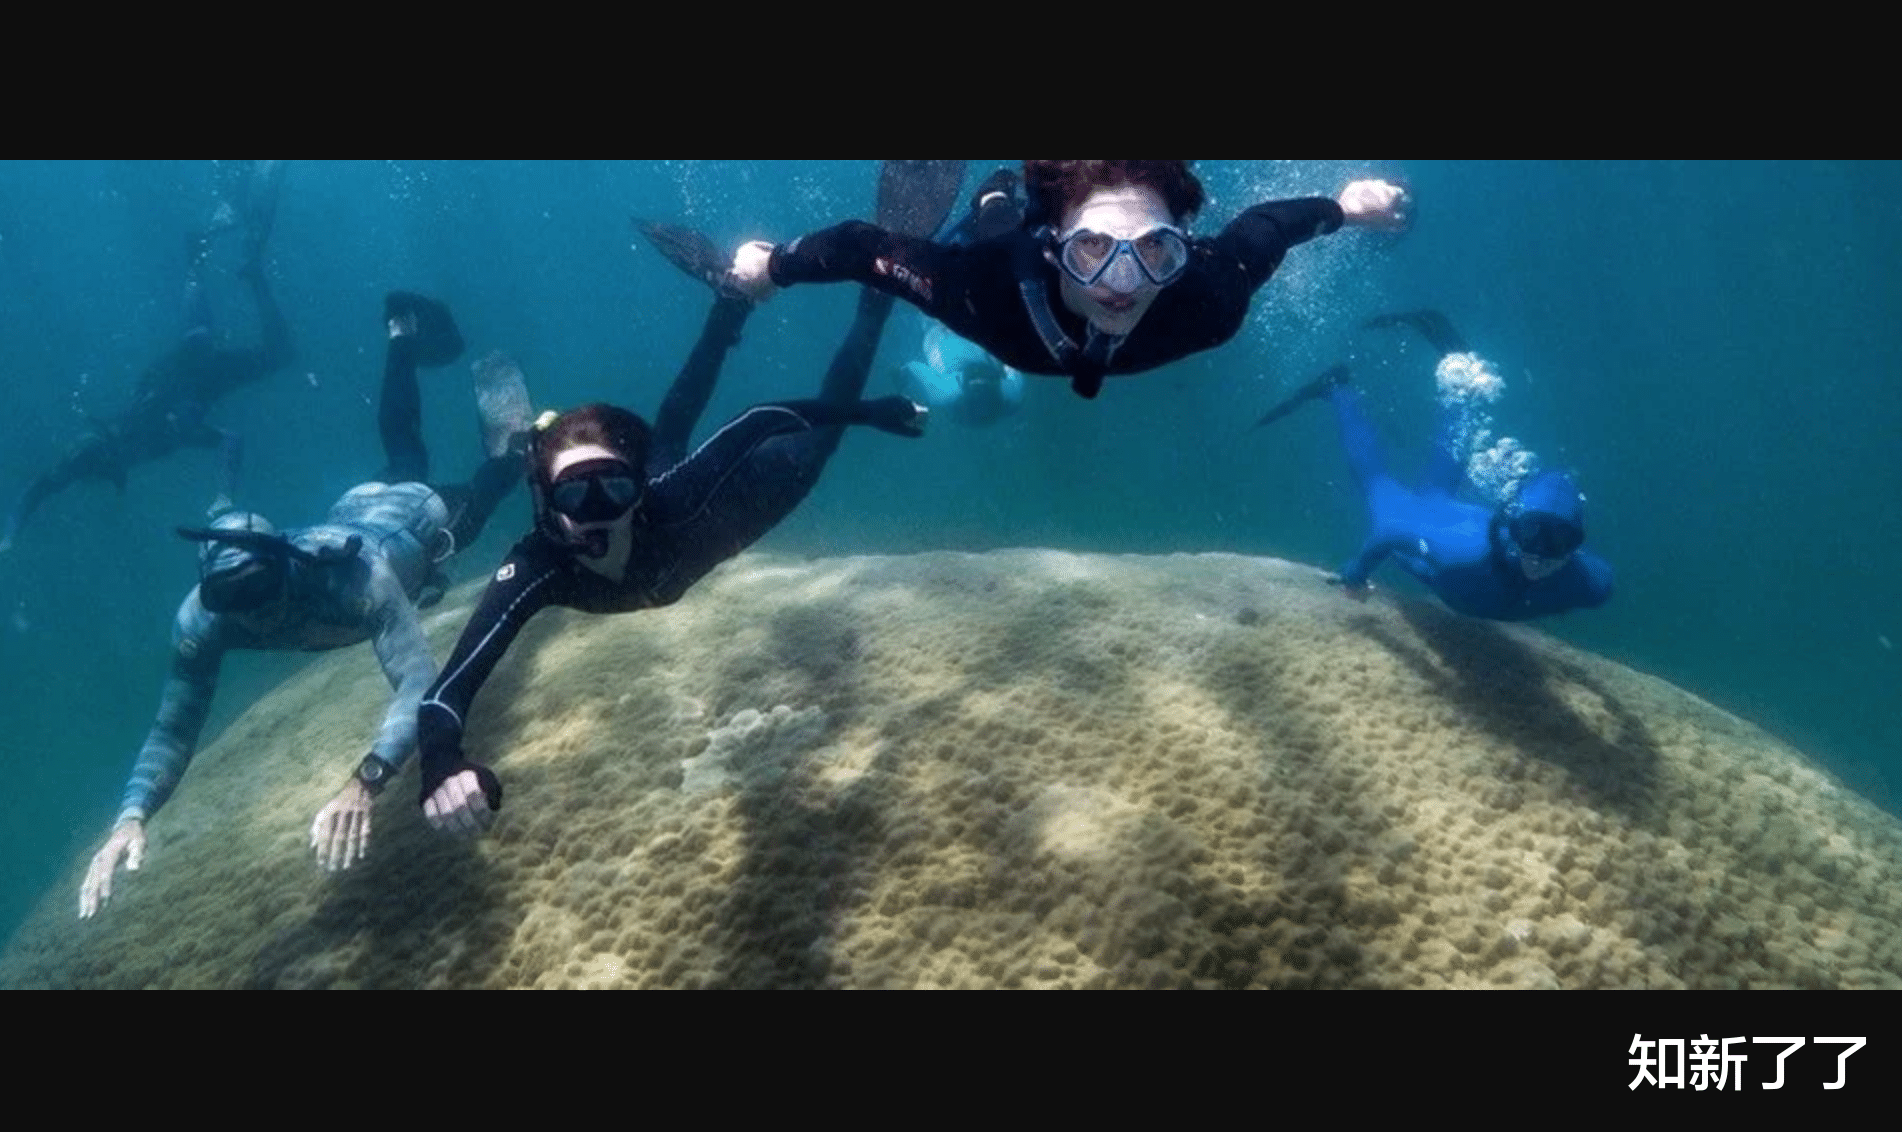 潘建伟 拥有400年历史的巨型珊瑚是大堡礁有史以来最宽的珊瑚